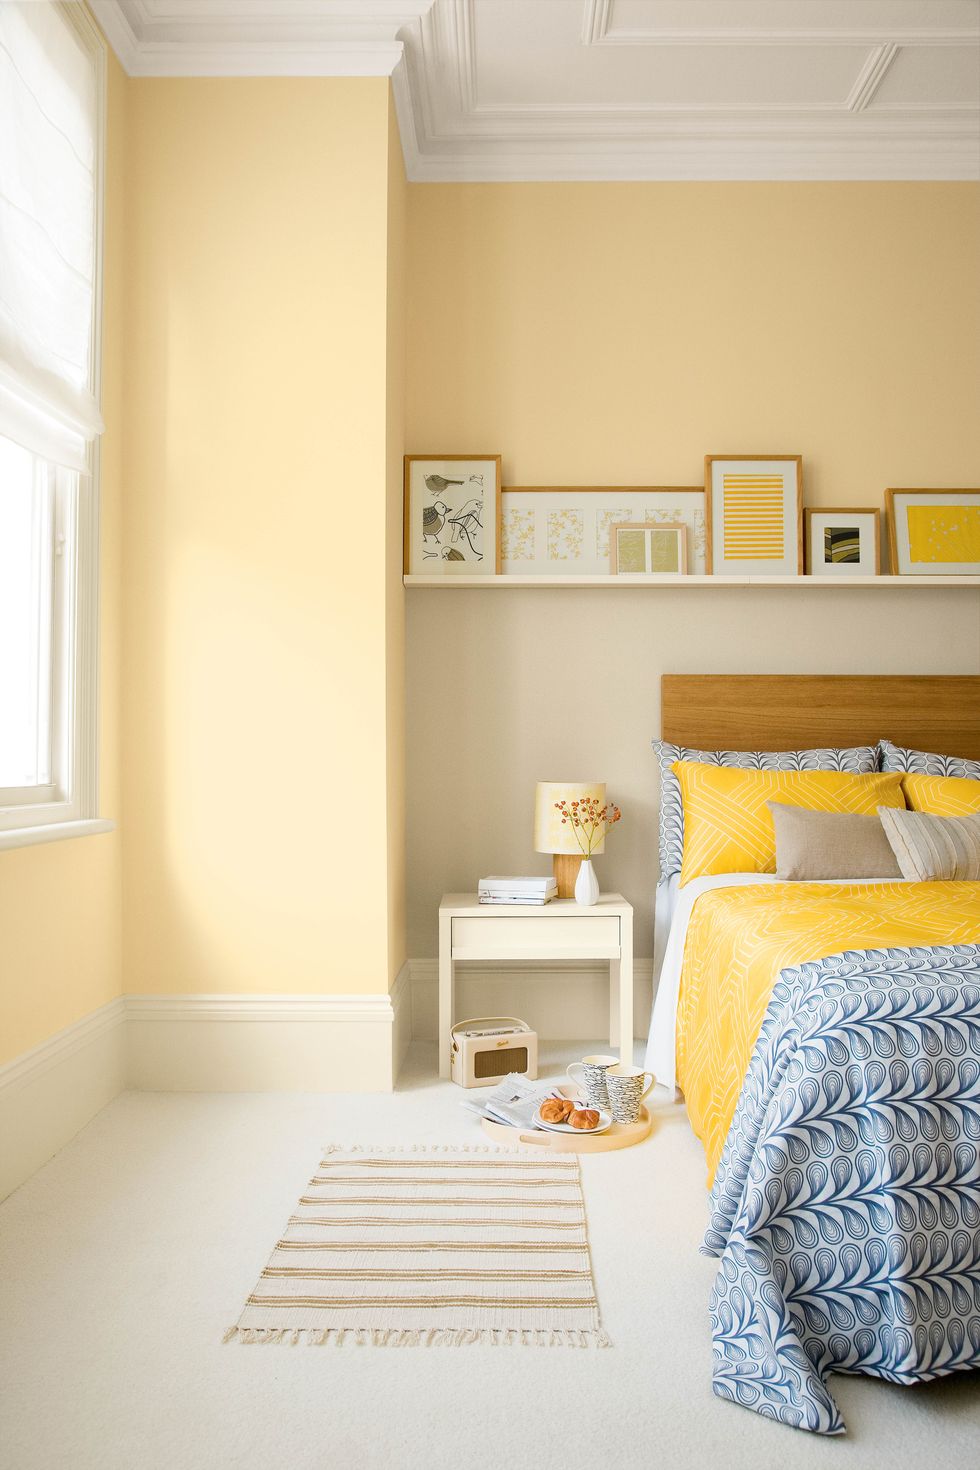 Thiết kế phòng ngủ màu vàng pastel ngọt ngào